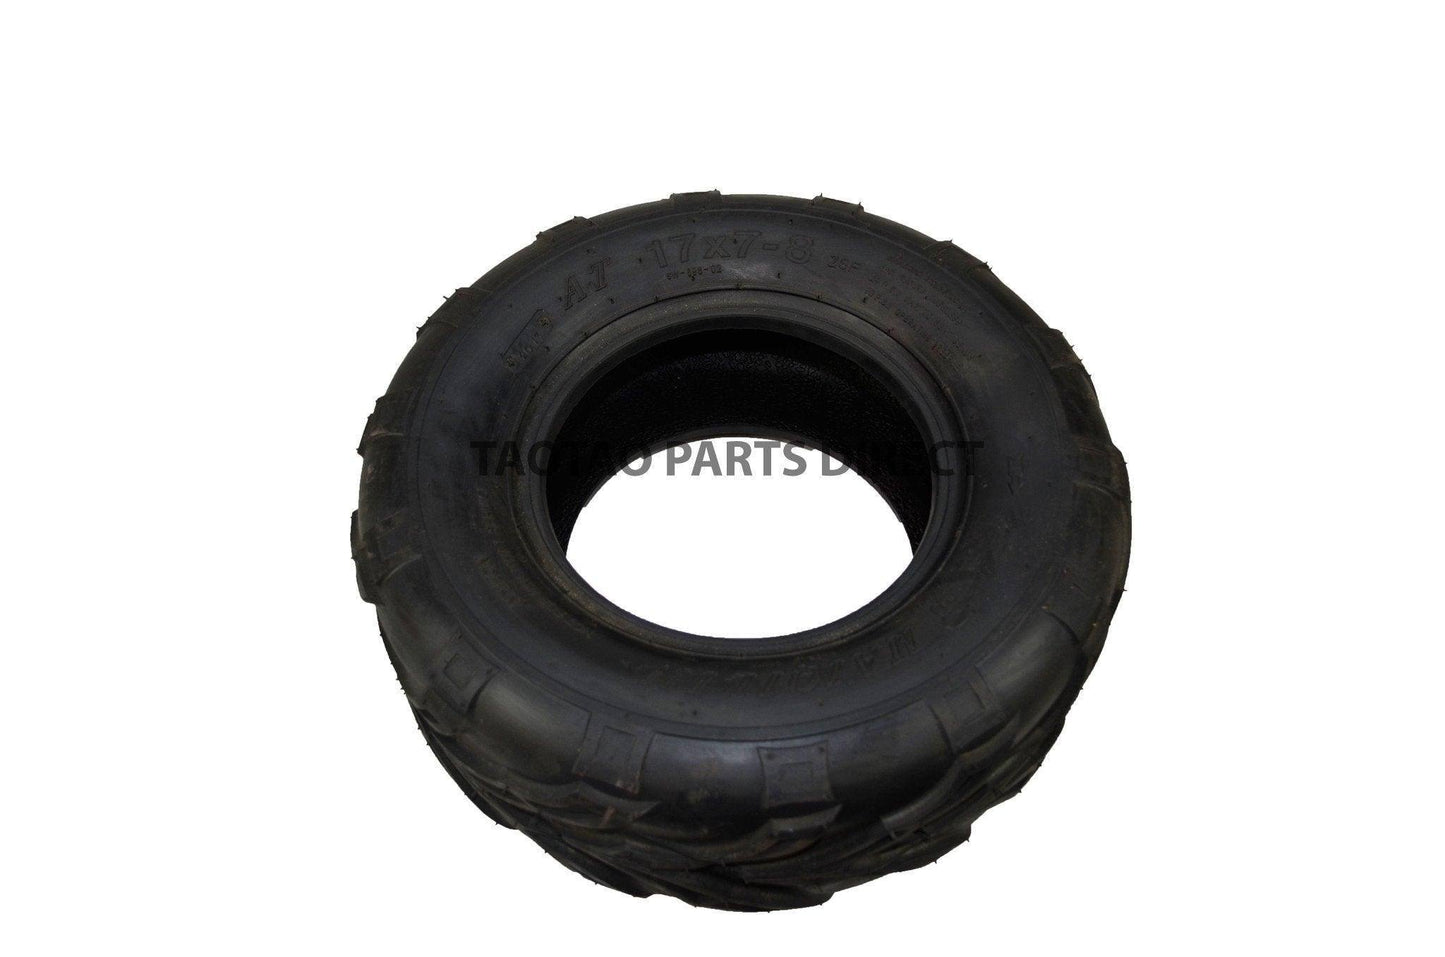 17x7-8 Tire - TaoTao Parts Direct